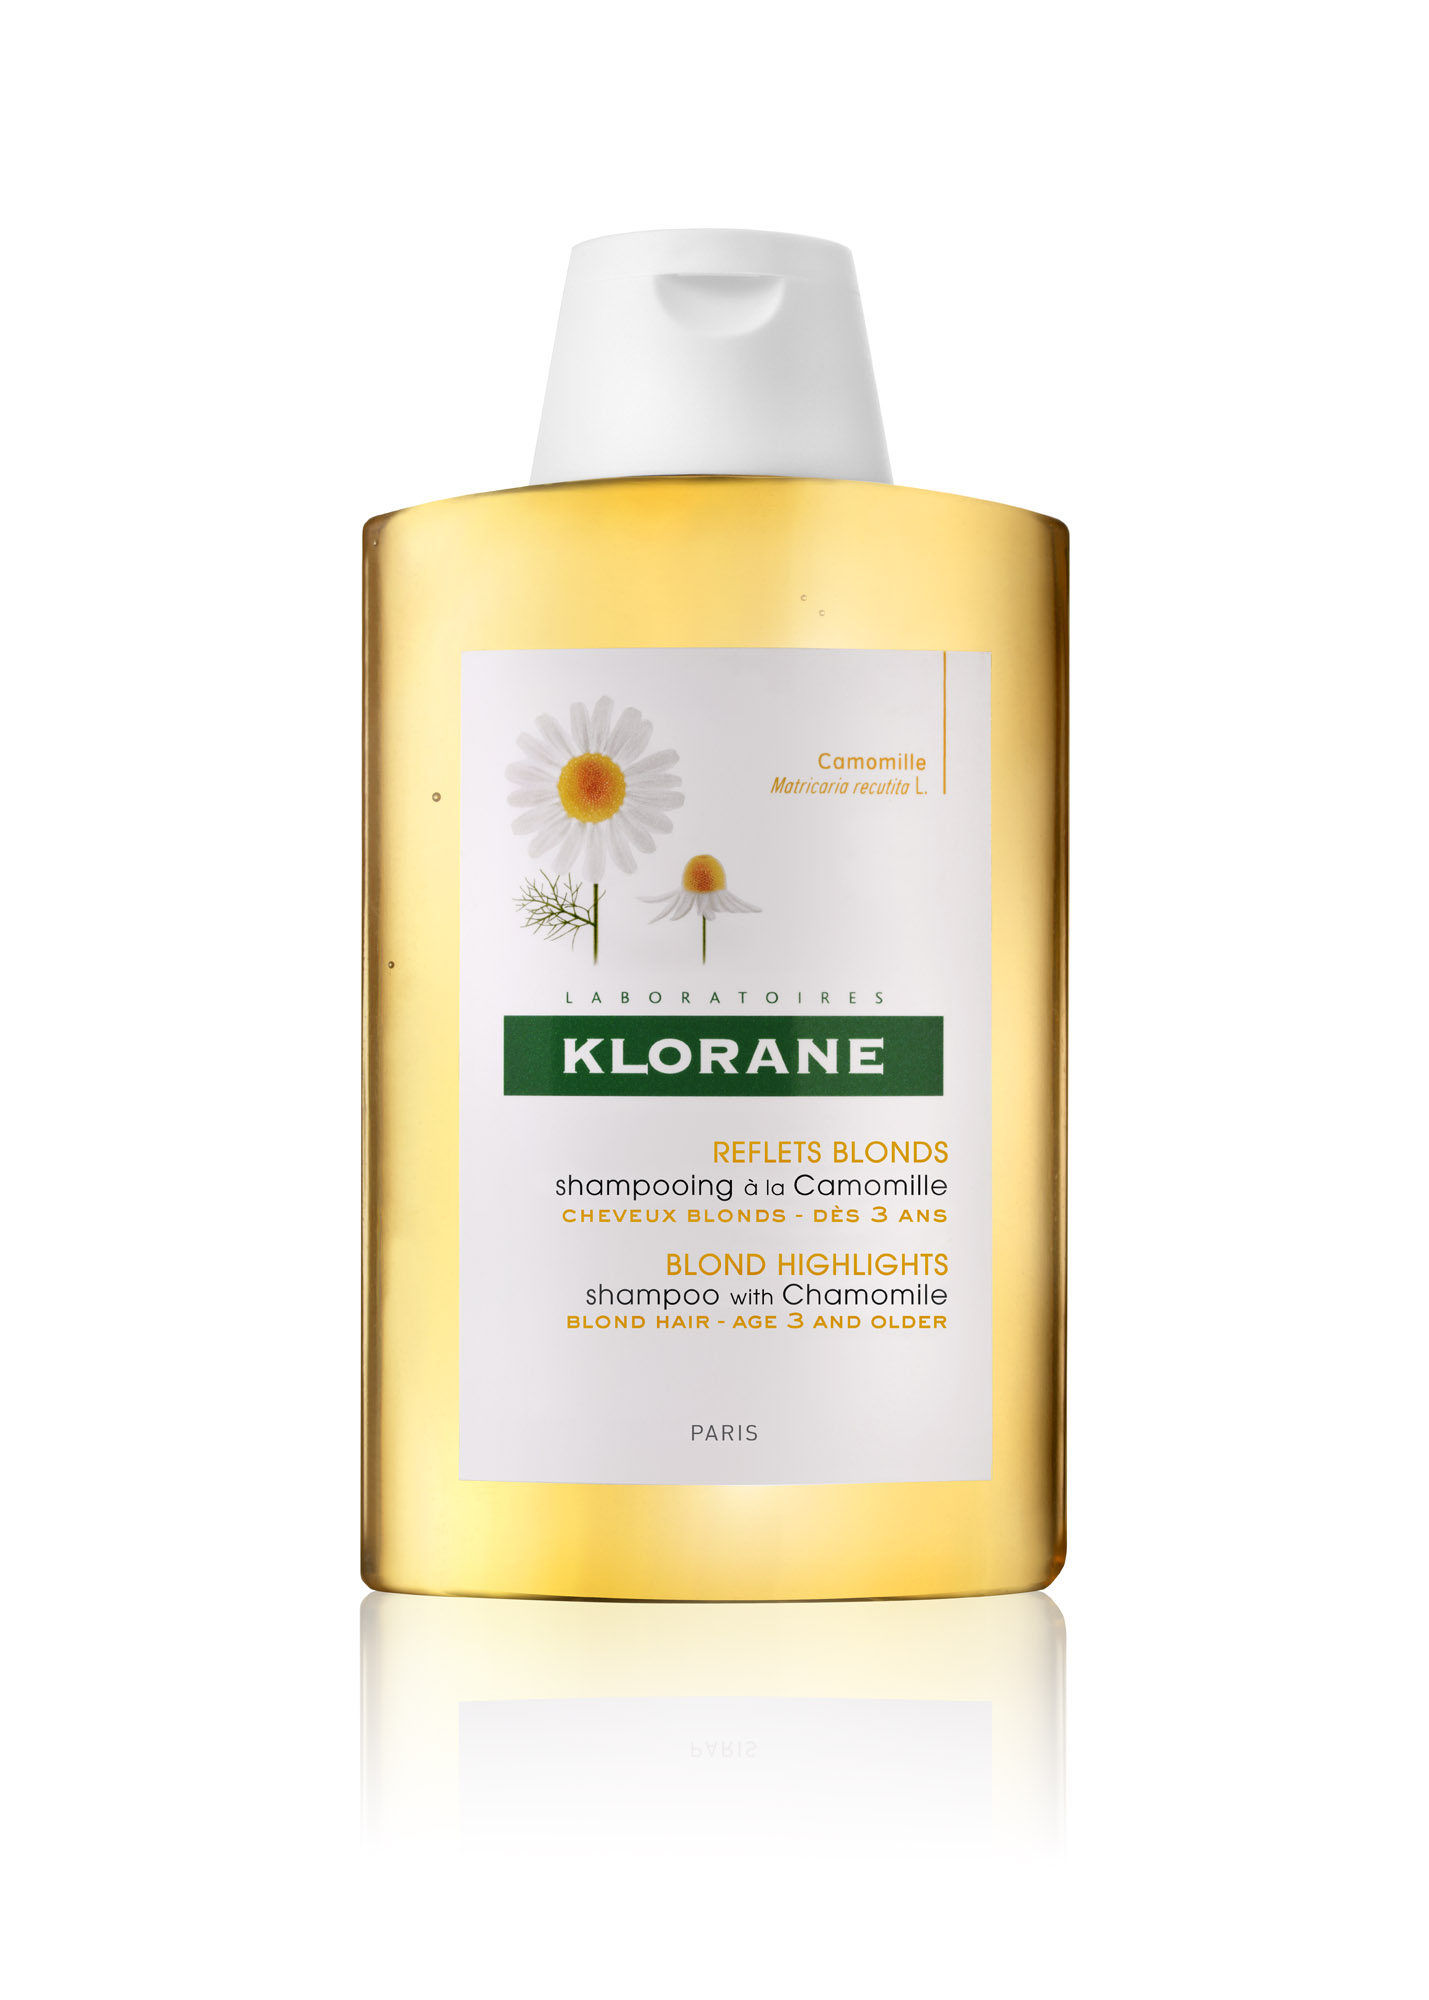 კლორანი - გვირილის შამპუნი ქერა თმისთვის / klorane - Shampoo with Chamomile